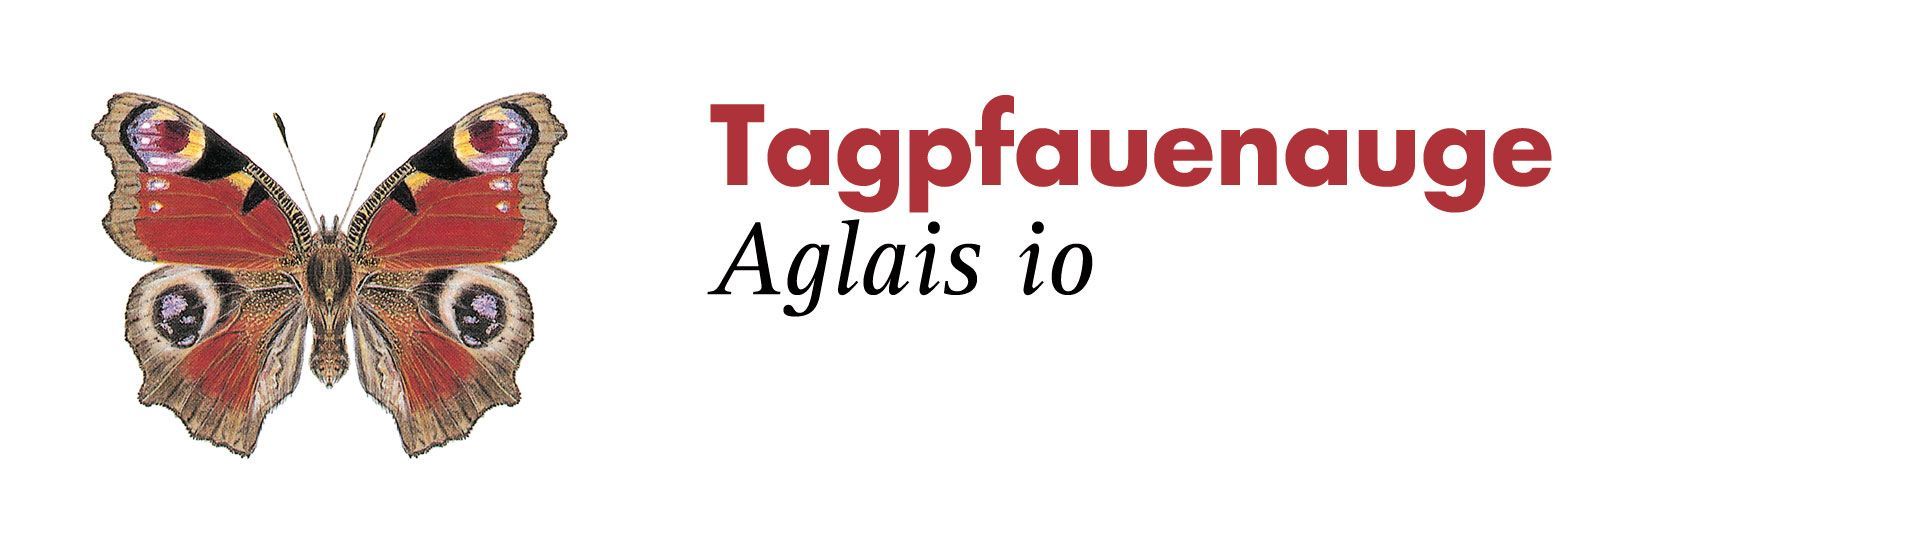 Tagpfauenauge. Grafik: Haupt Verlag AG